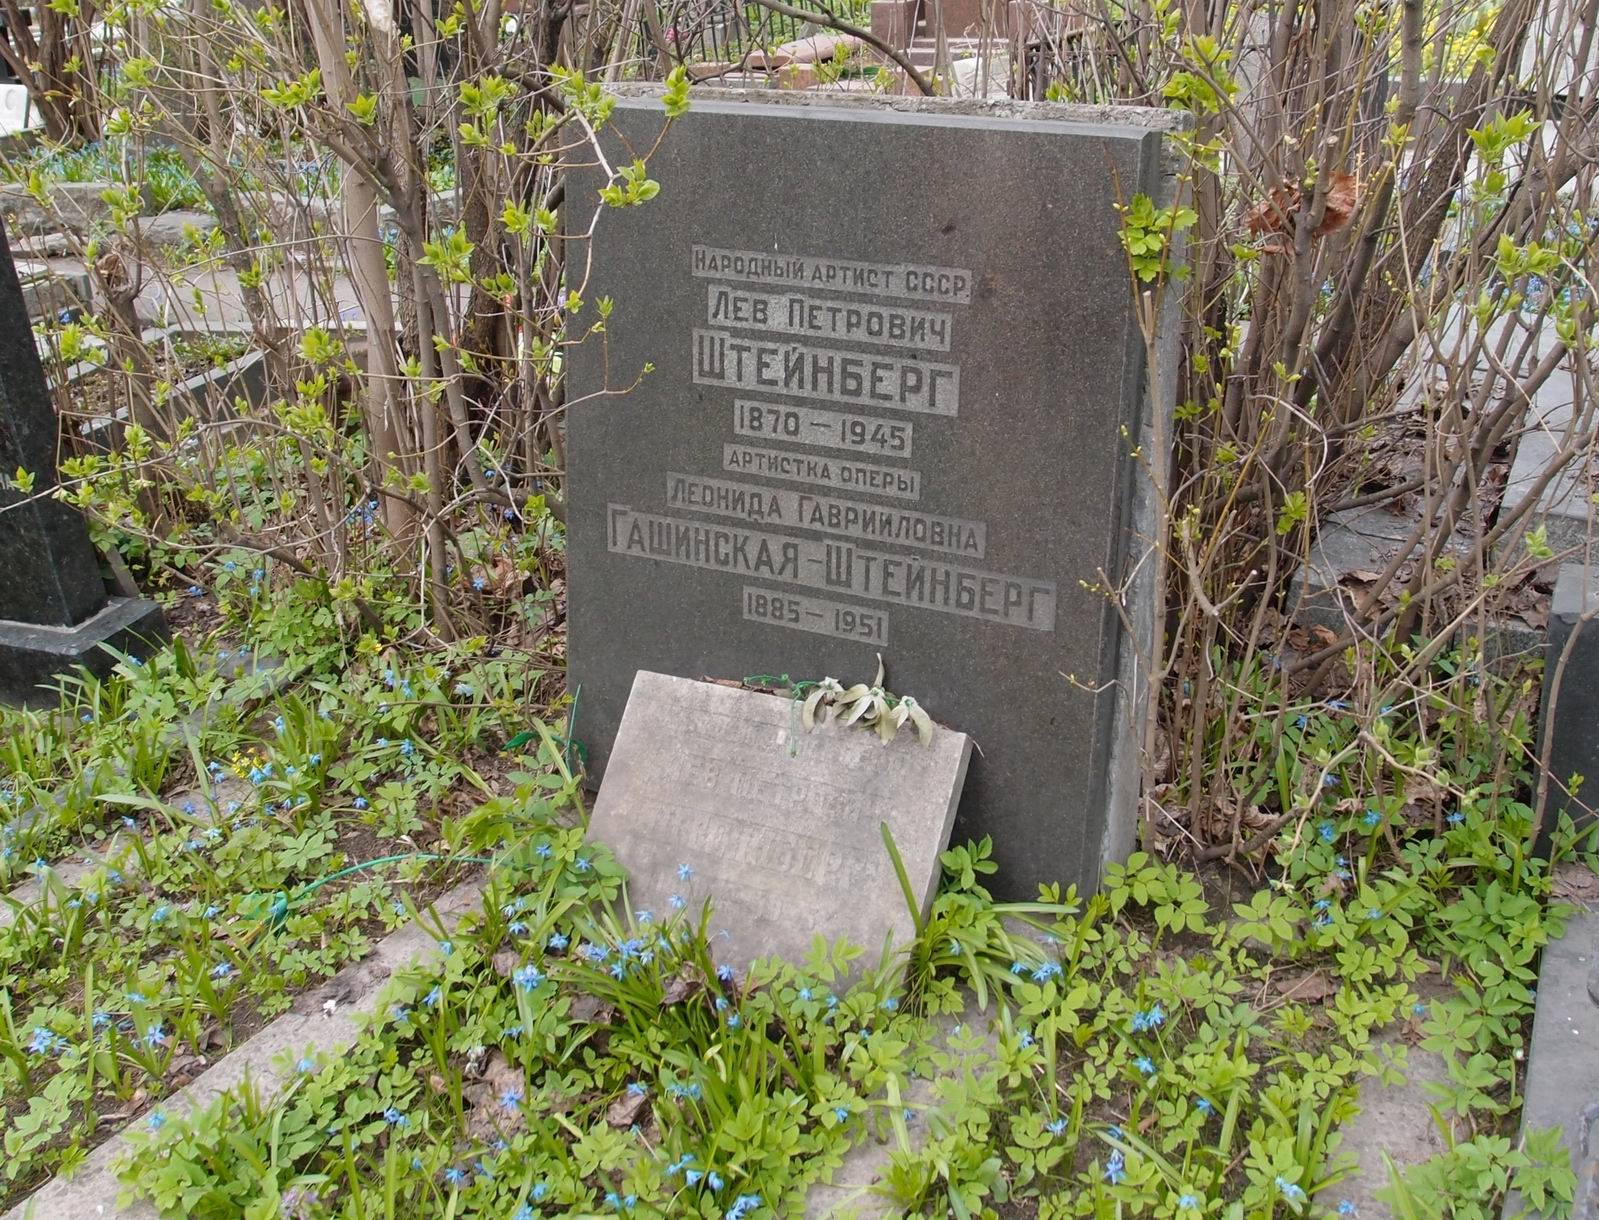 Памятник на могиле Штейнберга Л.П. (1870-1945), на Новодевичьем кладбище (2-25-2).